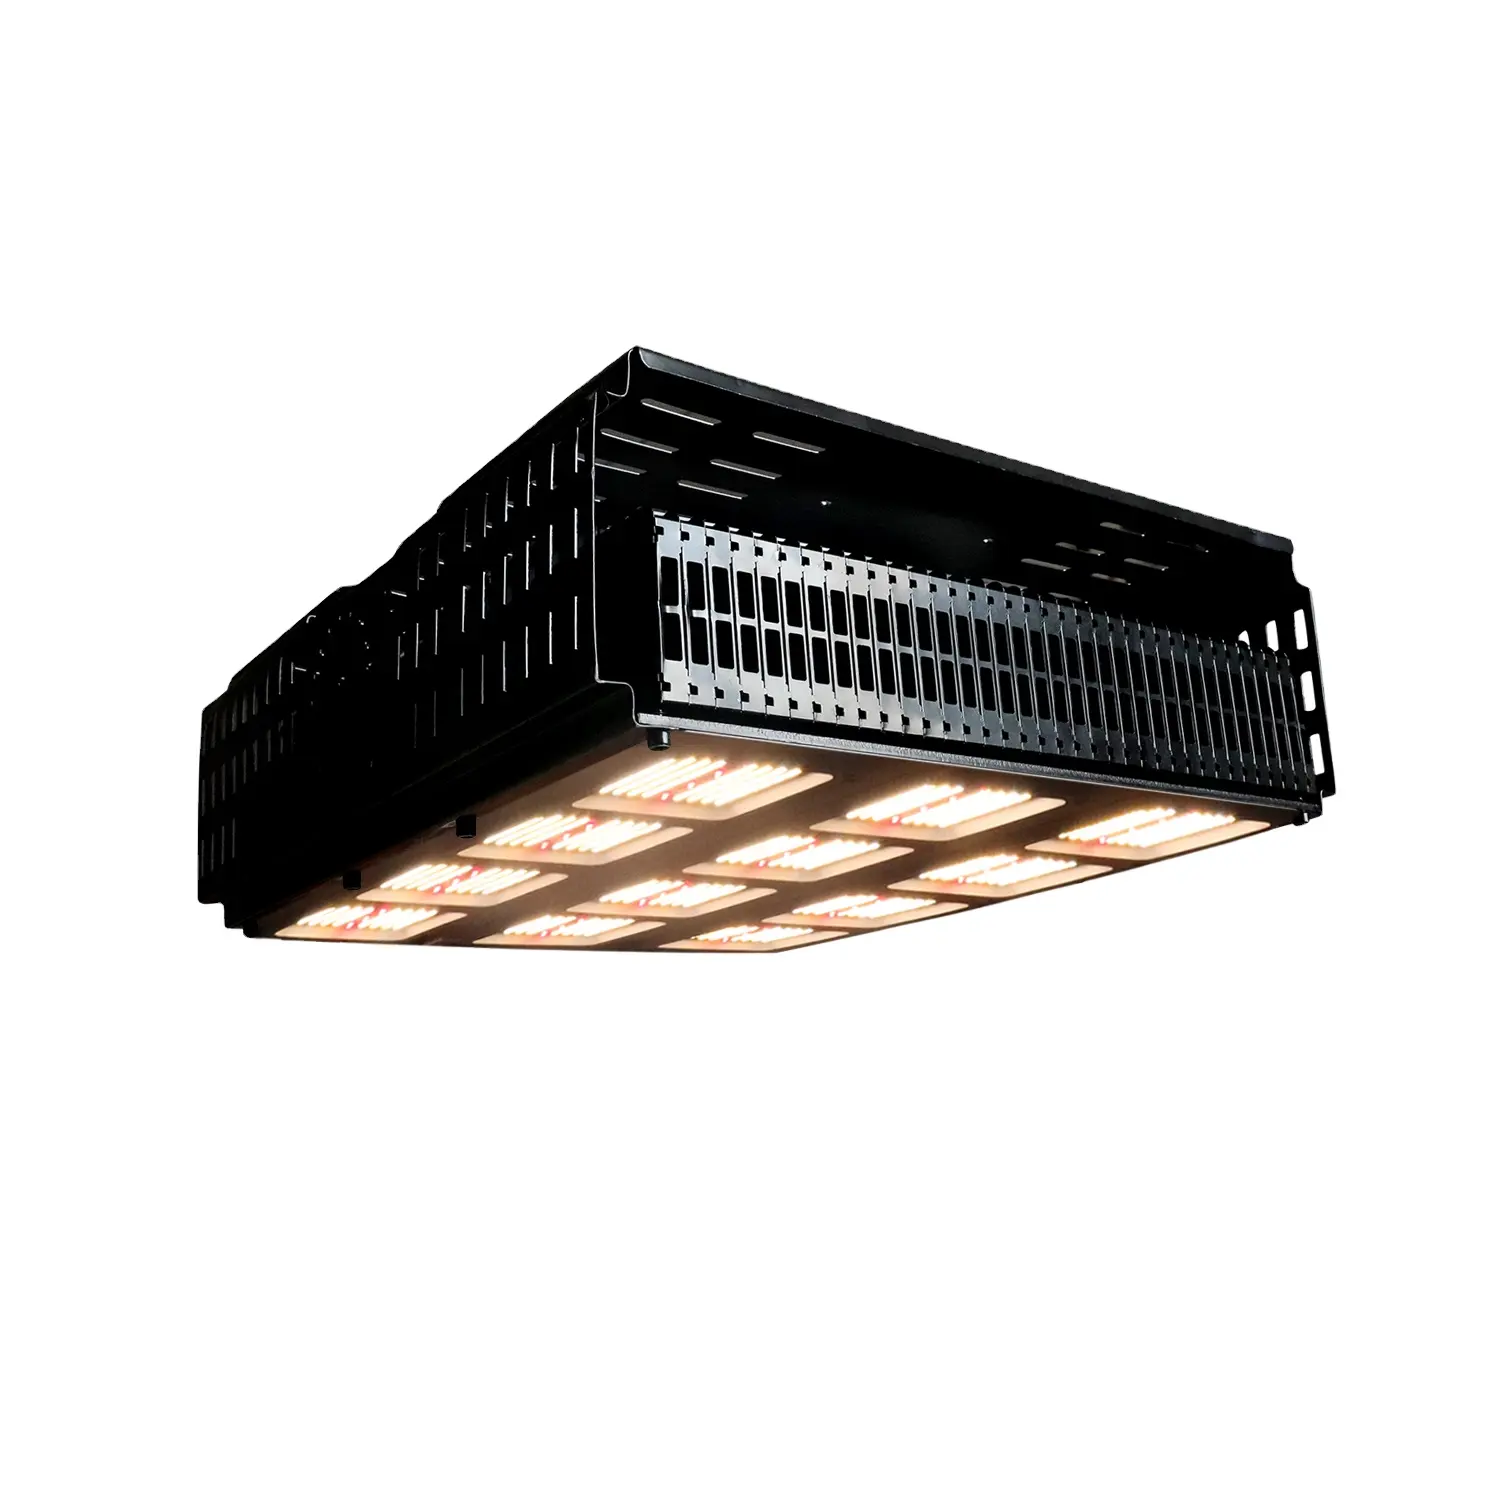 Gewächshaus Top Licht LED wachsen Licht Koray RX-630 Samsung 1 m301h wasserdicht energie effizient für die Steigerung der Erträge